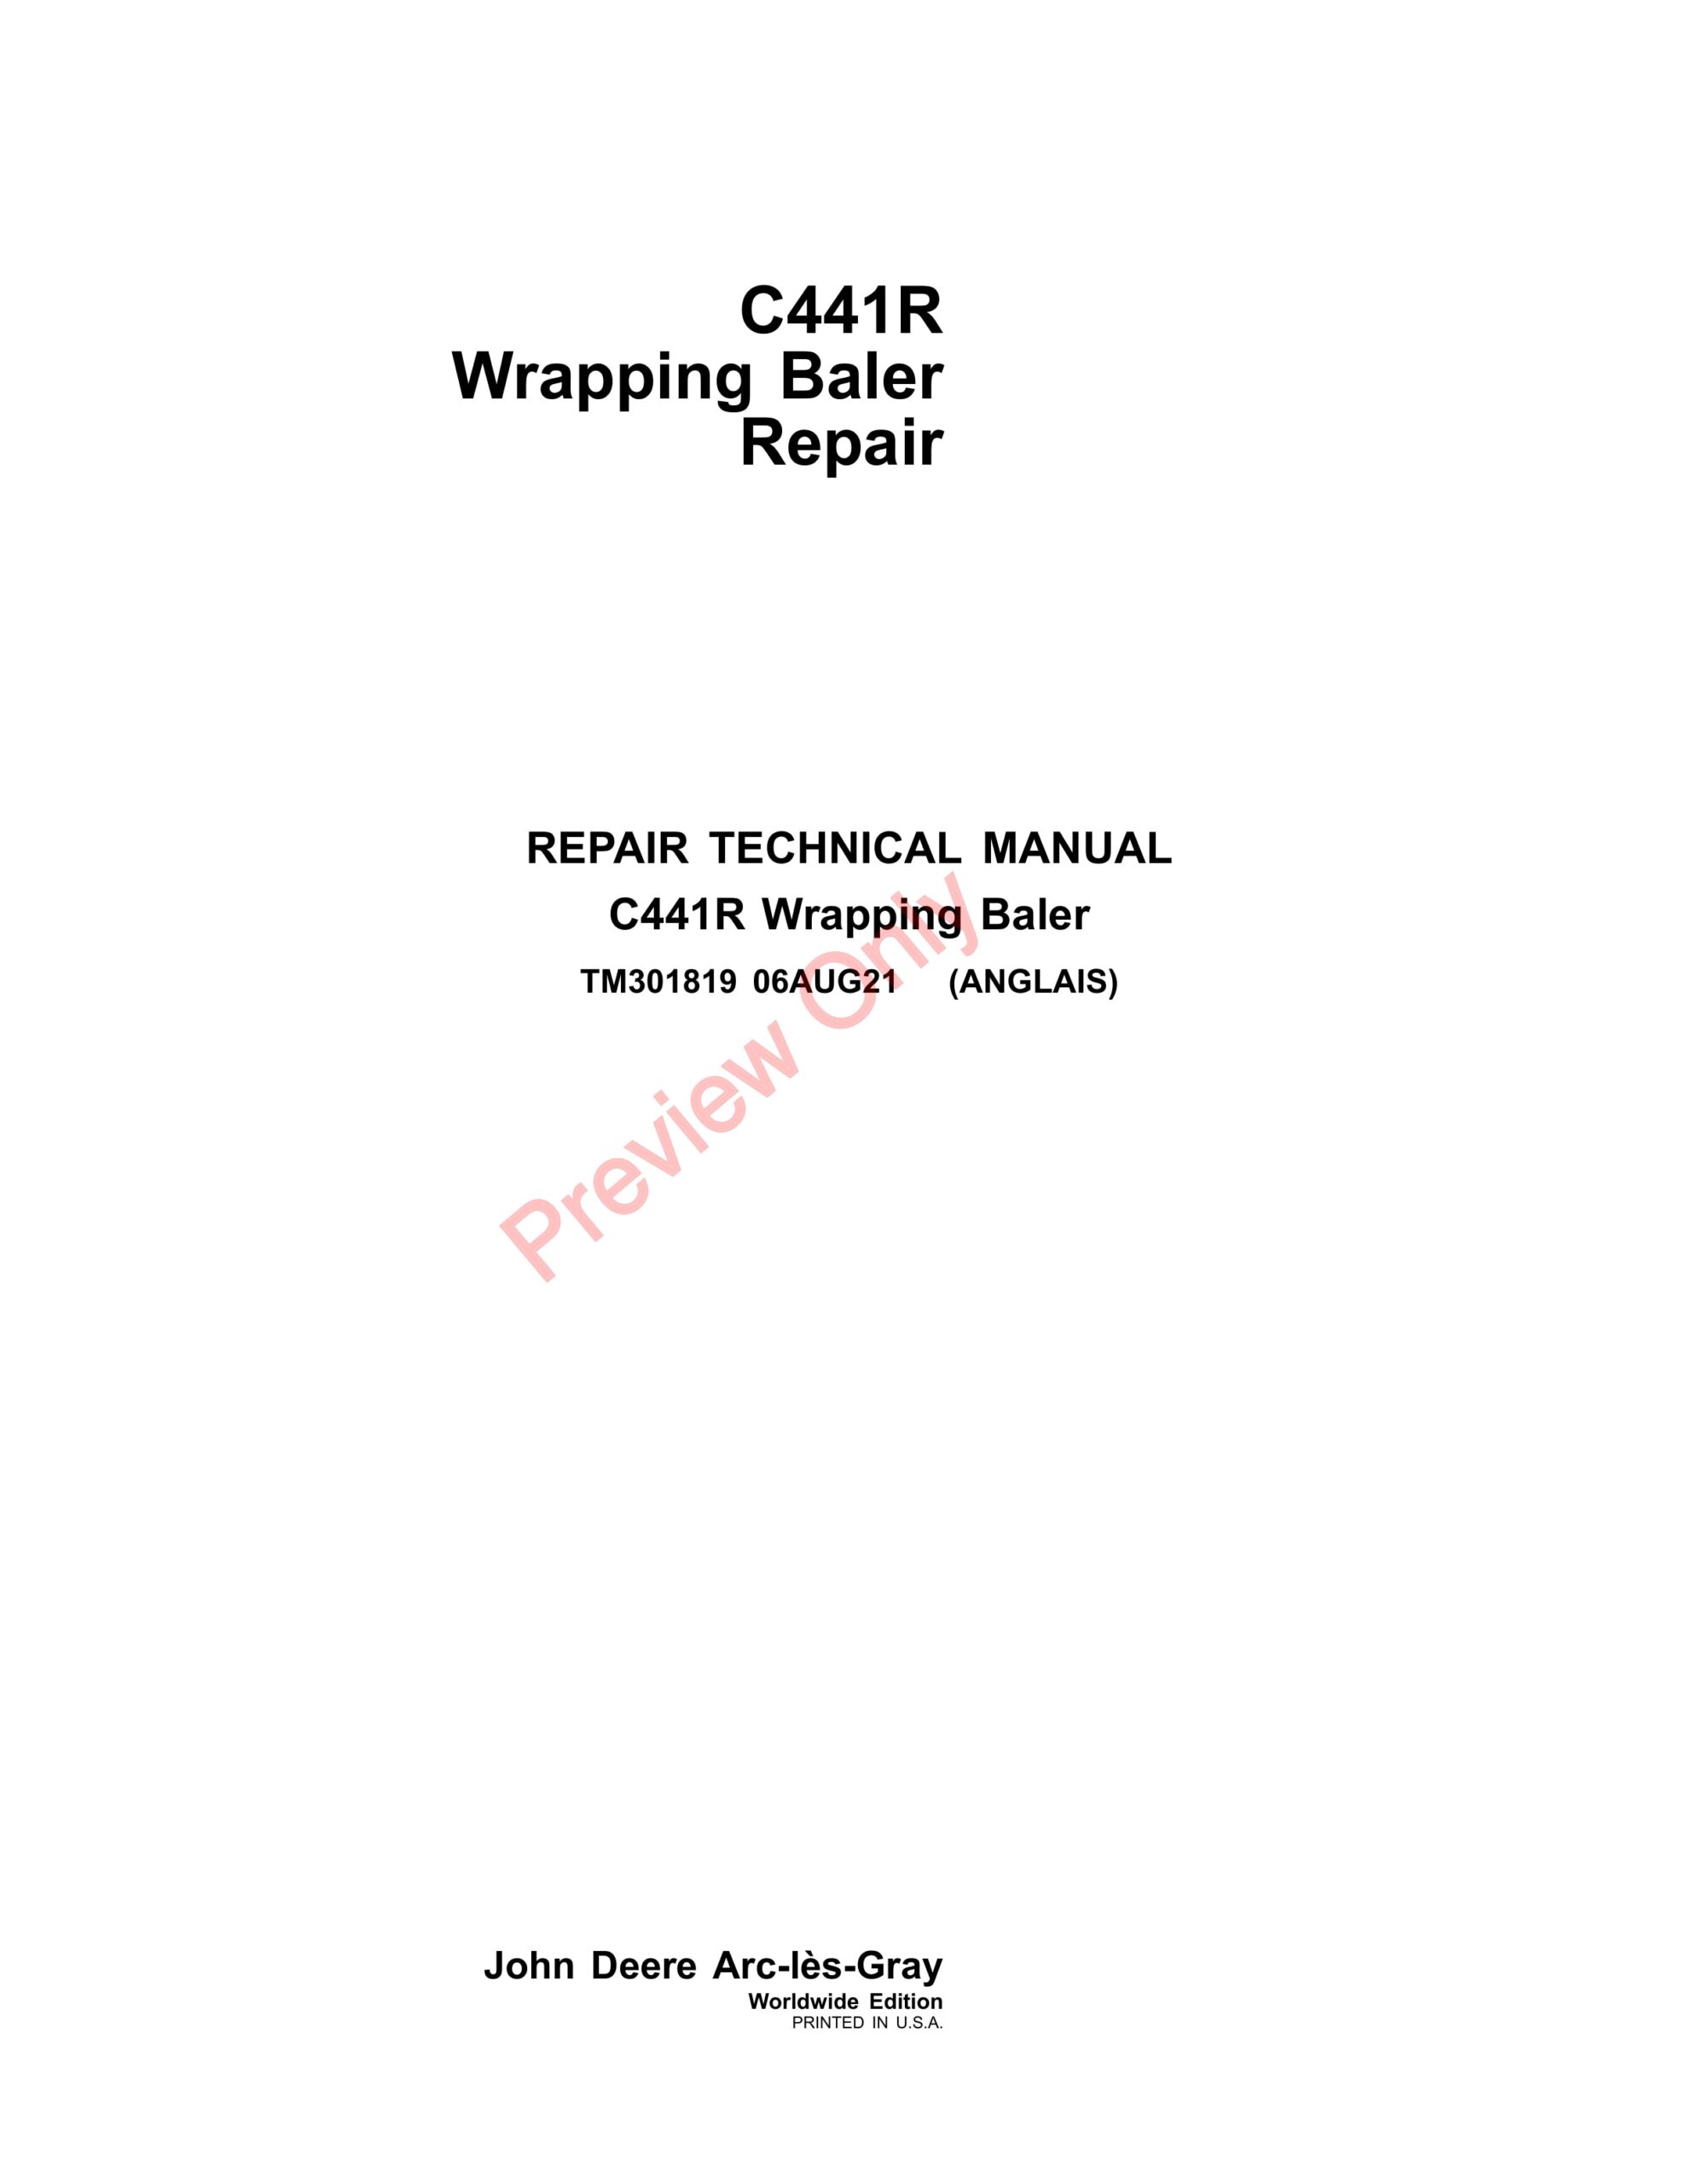 John Deere C441R Wrapping Baler Repair Technical Manual TM301819 06AUG21-1